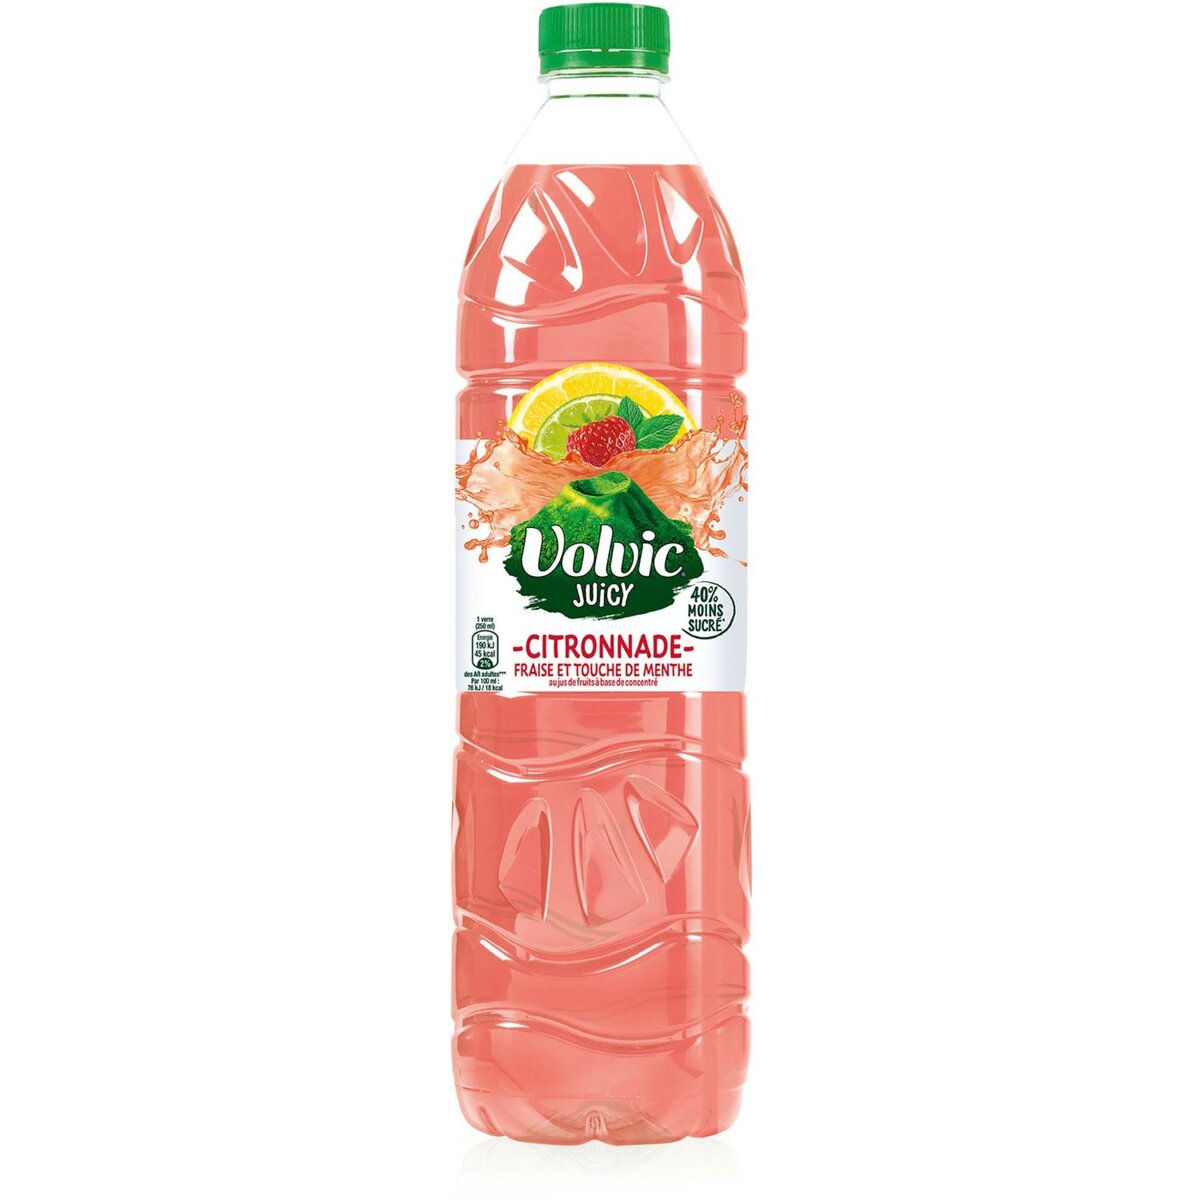 VOLVIC Citronnade juicy saveur fraise et touche de menthe 1,5l